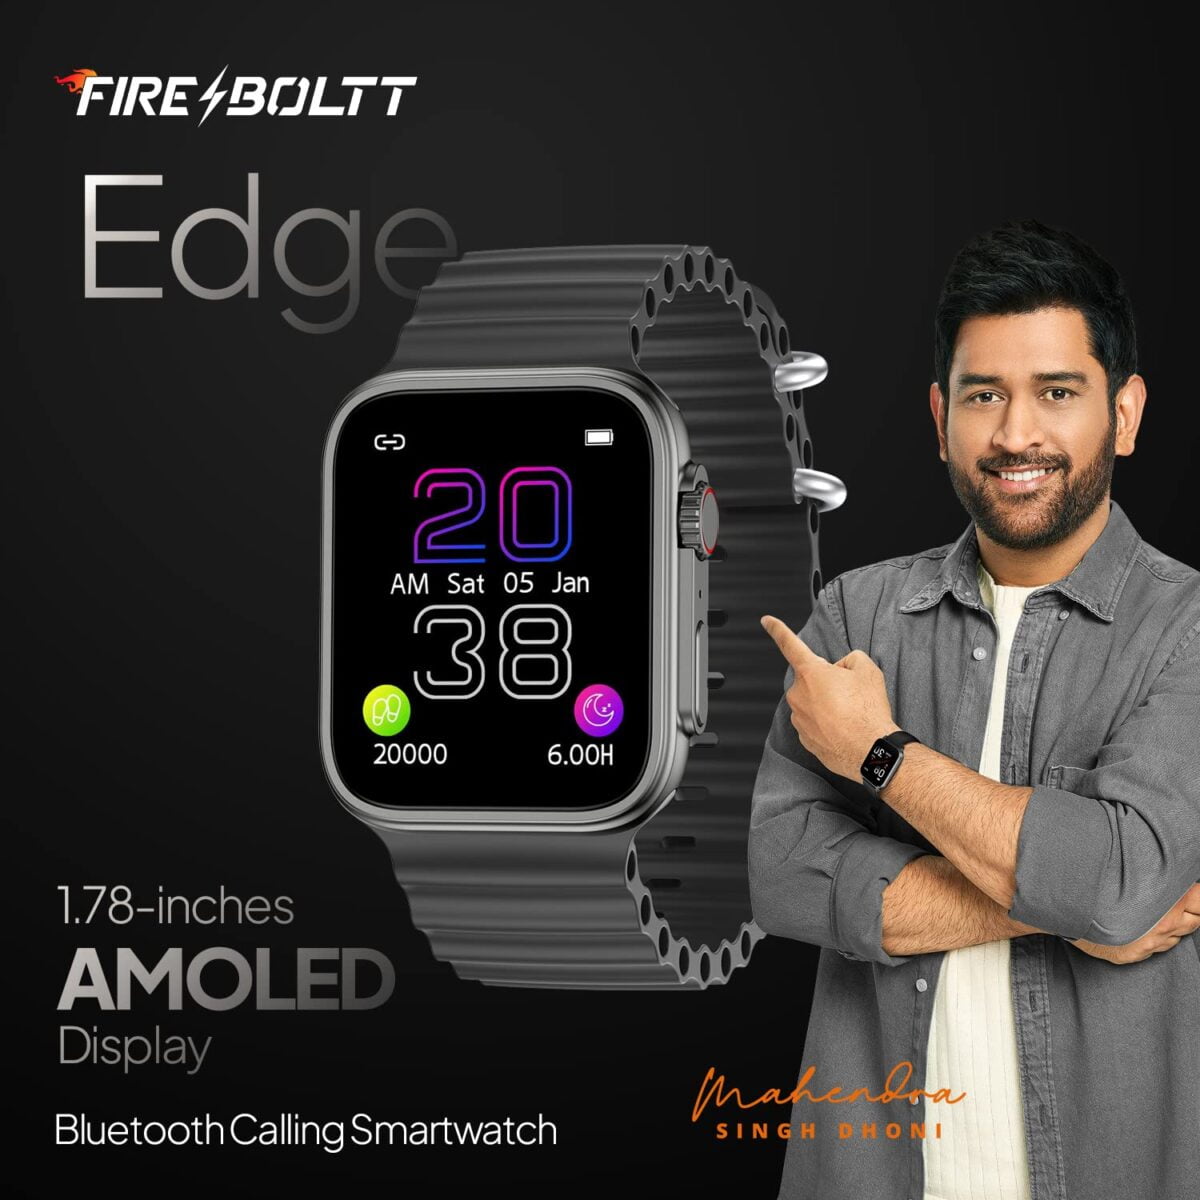 Fire boltt edge smartwatch grey 10 fire-boltt edge smartwatch